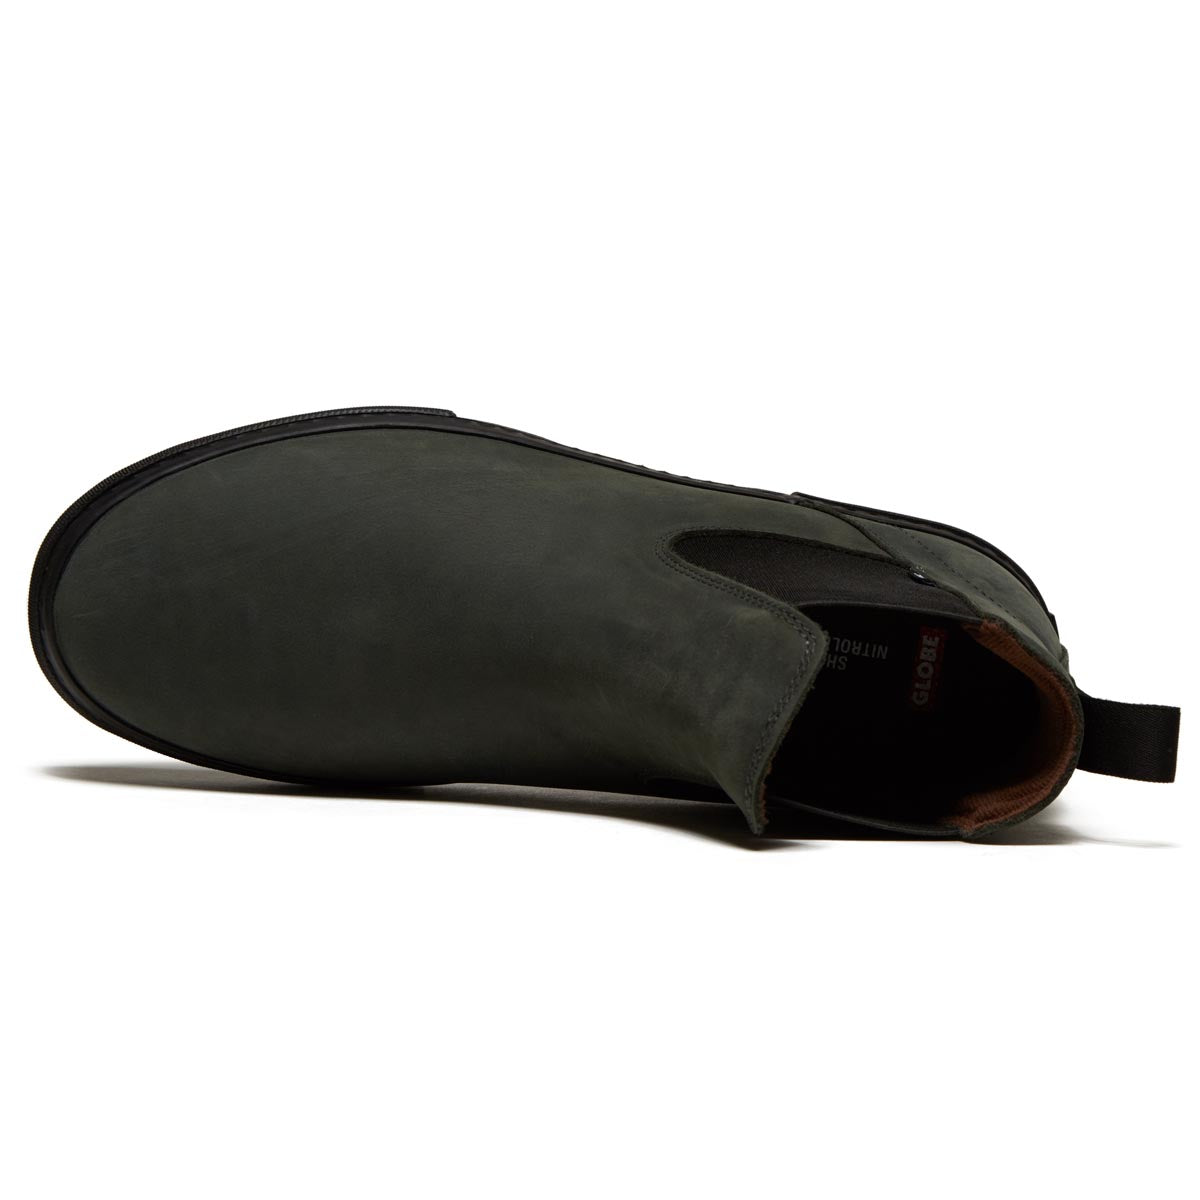 Globe Dover II Shoes - Iron/Black image 3